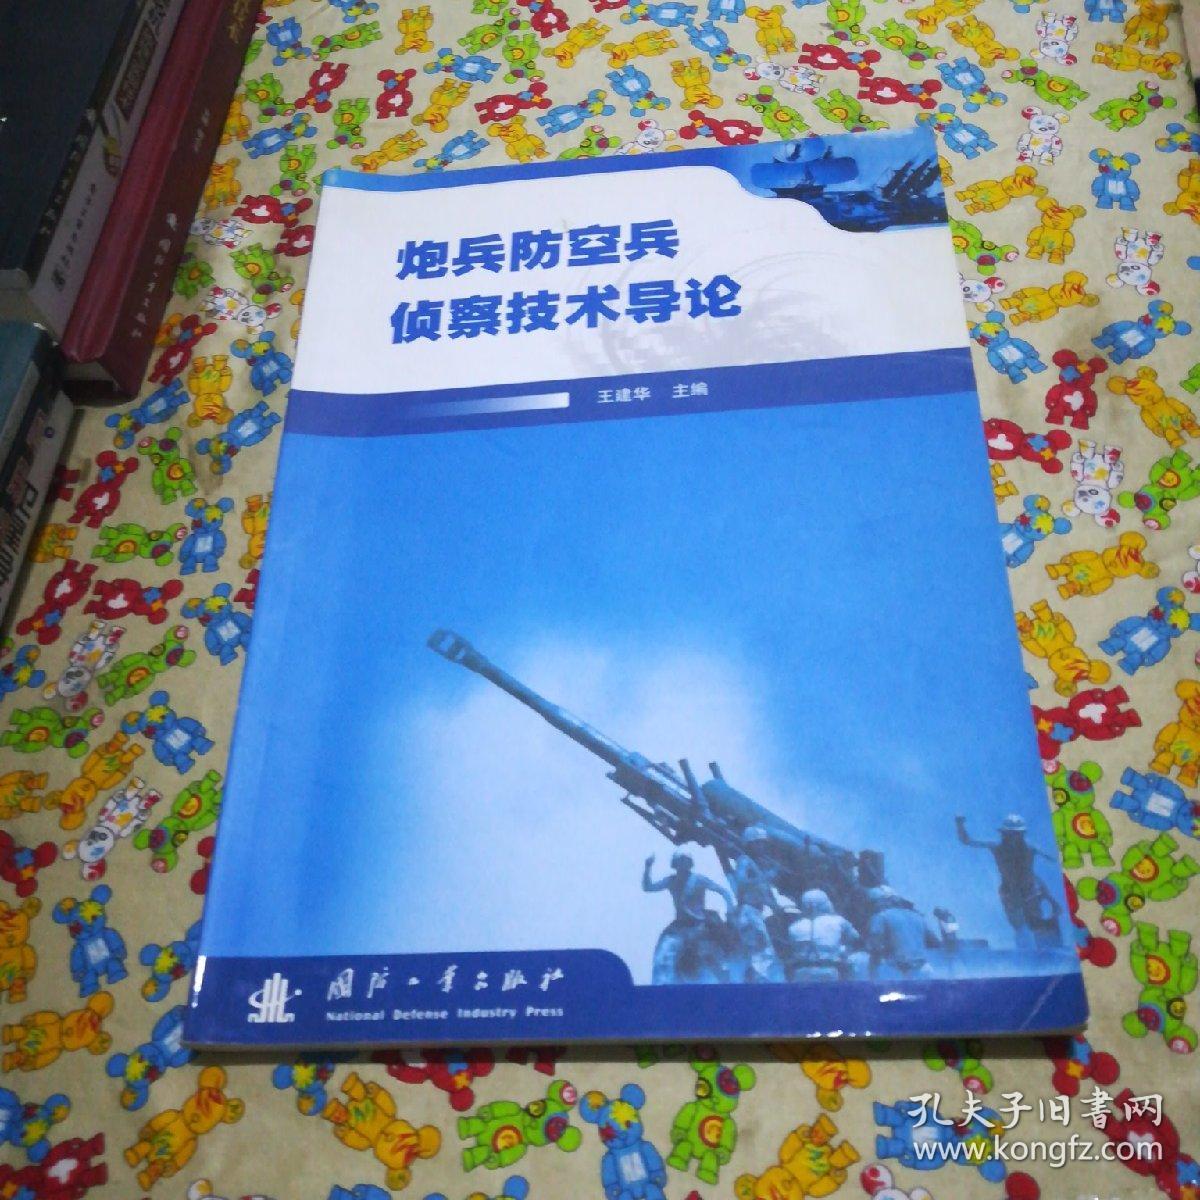 中国人民解放军陆军装甲兵学院_空降兵15军和陆军38军_陆军装甲通信兵是干什么的